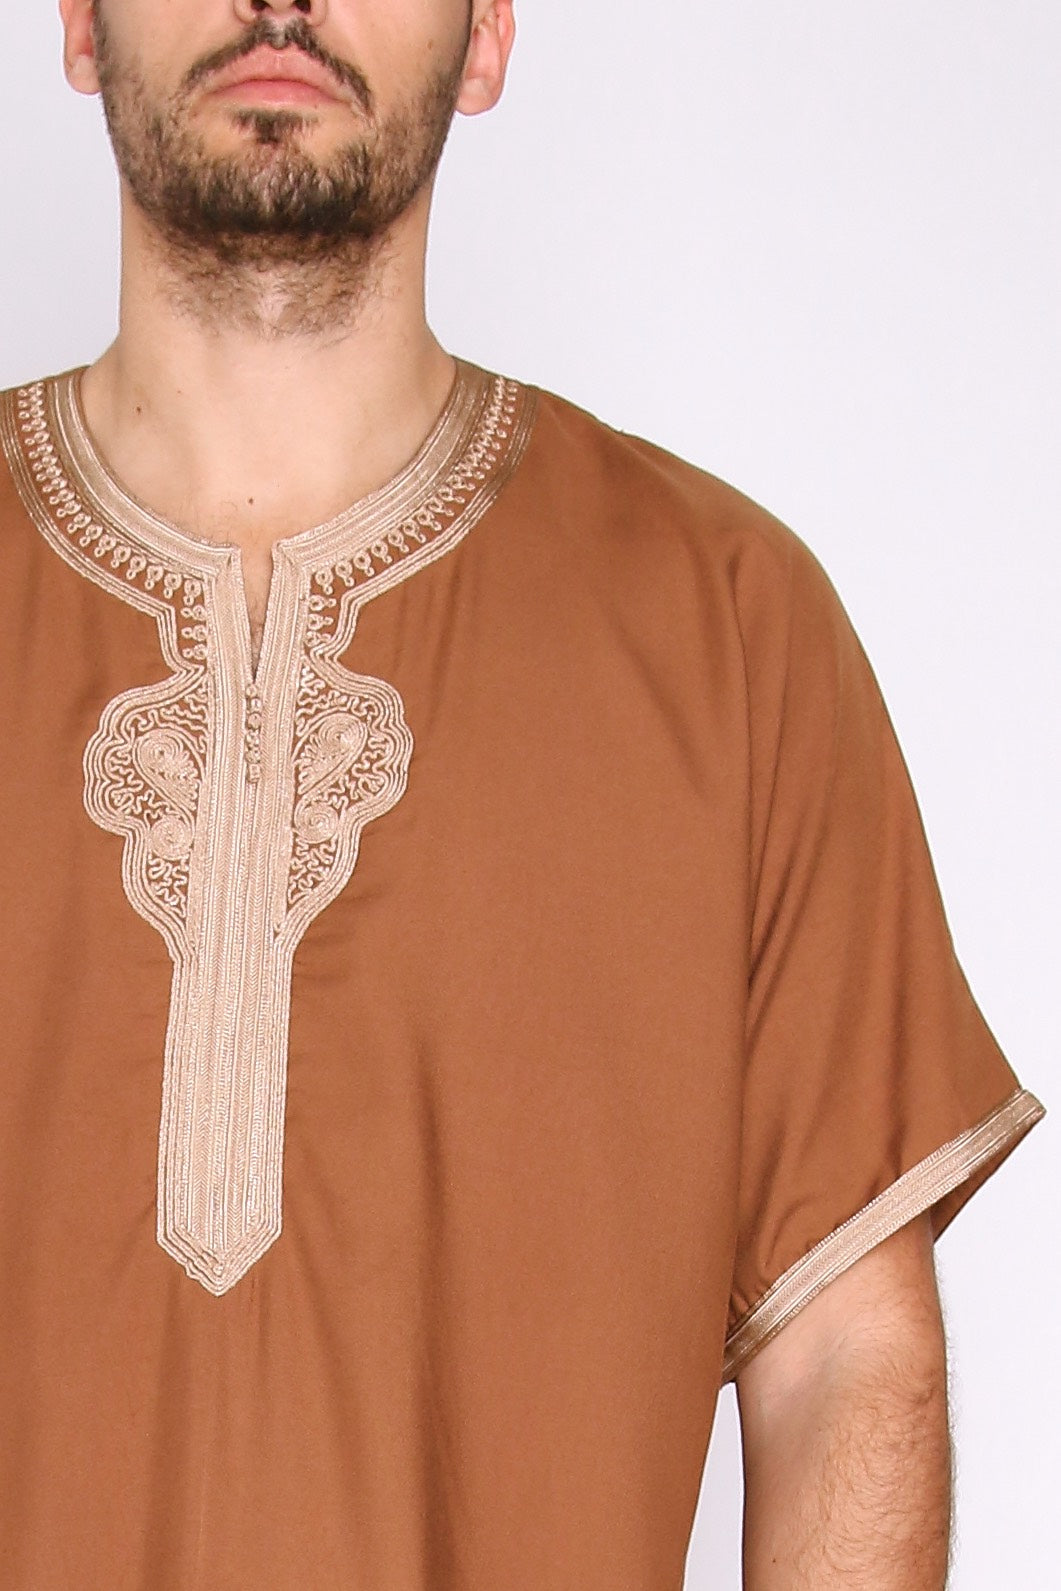 Gandoura Badr Embroidered Short Sleeve Men's Long Robe Thobe in Brown